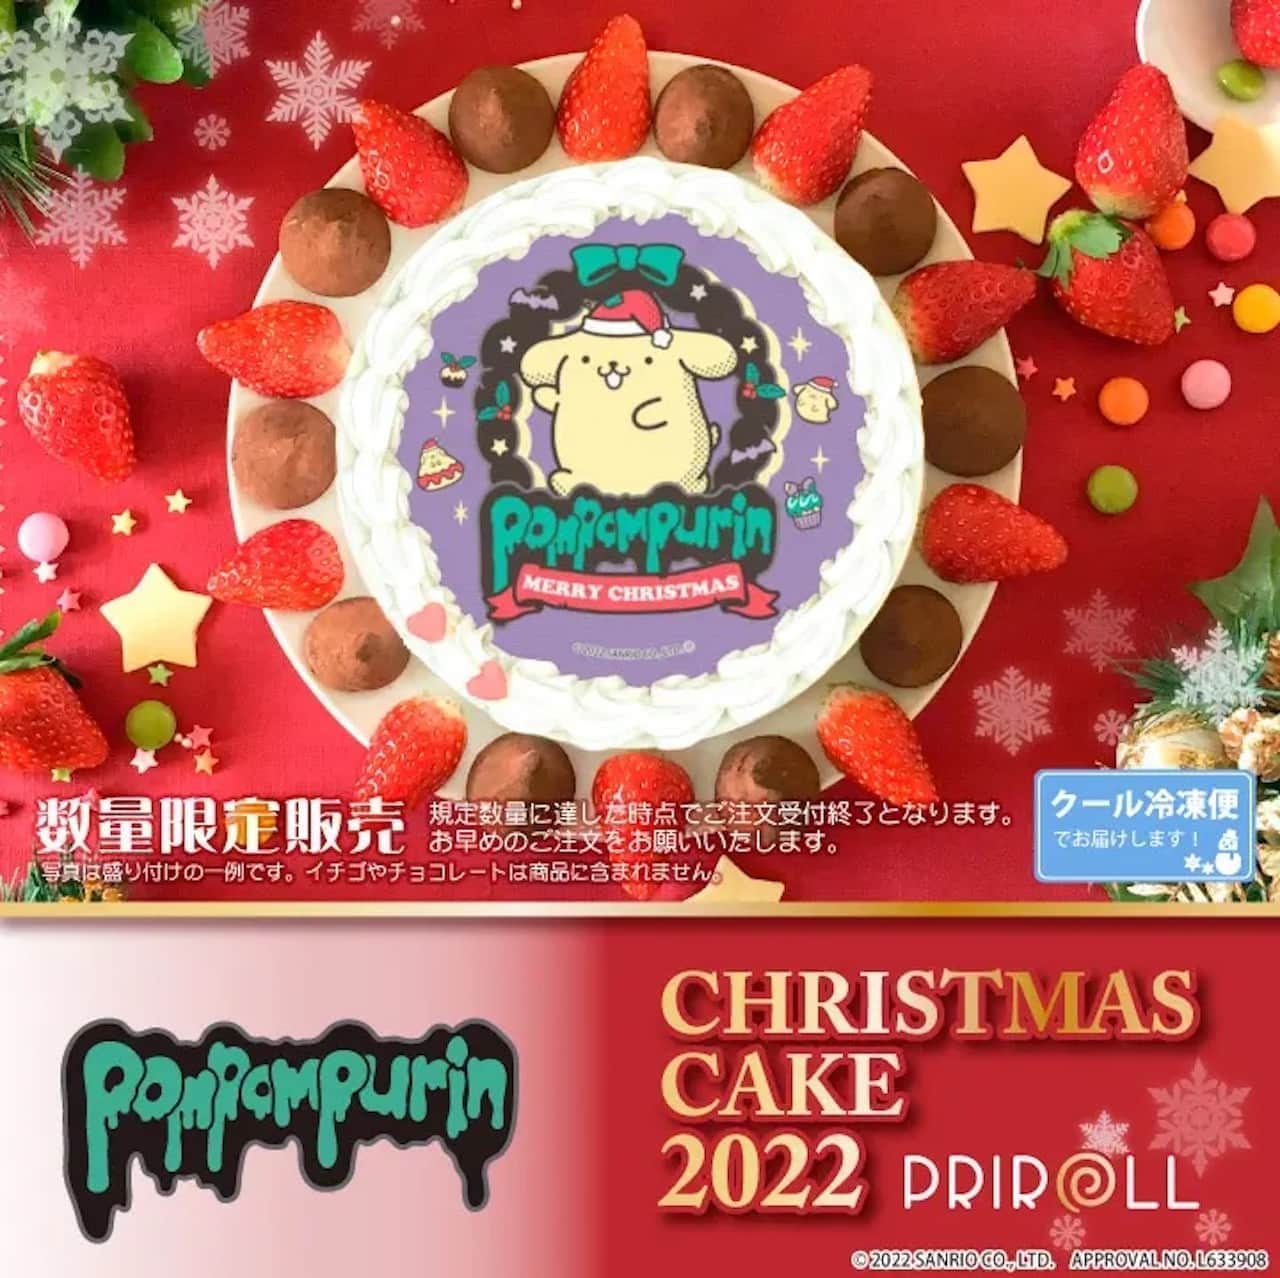 ポムポムプリン クリスマス限定デザインプリントケーキ 2022年 プリロールで予約受付開始